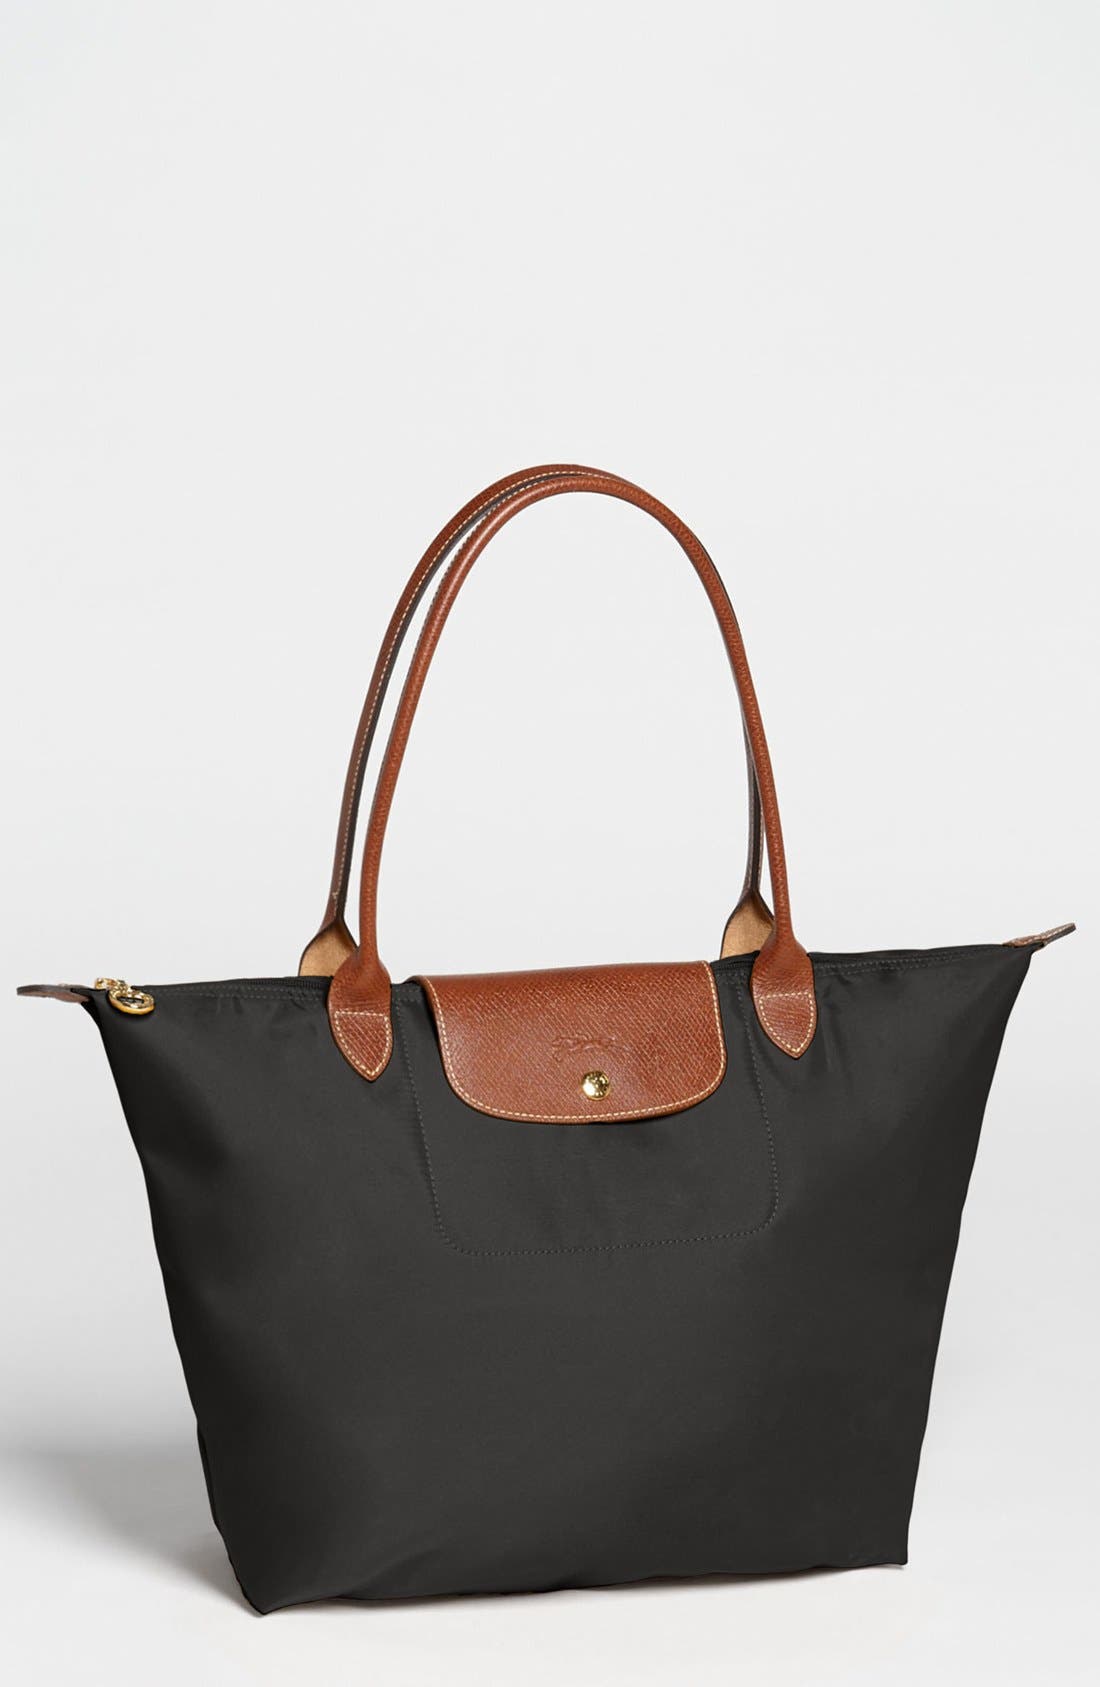 Shoulder Bags | Nordstrom